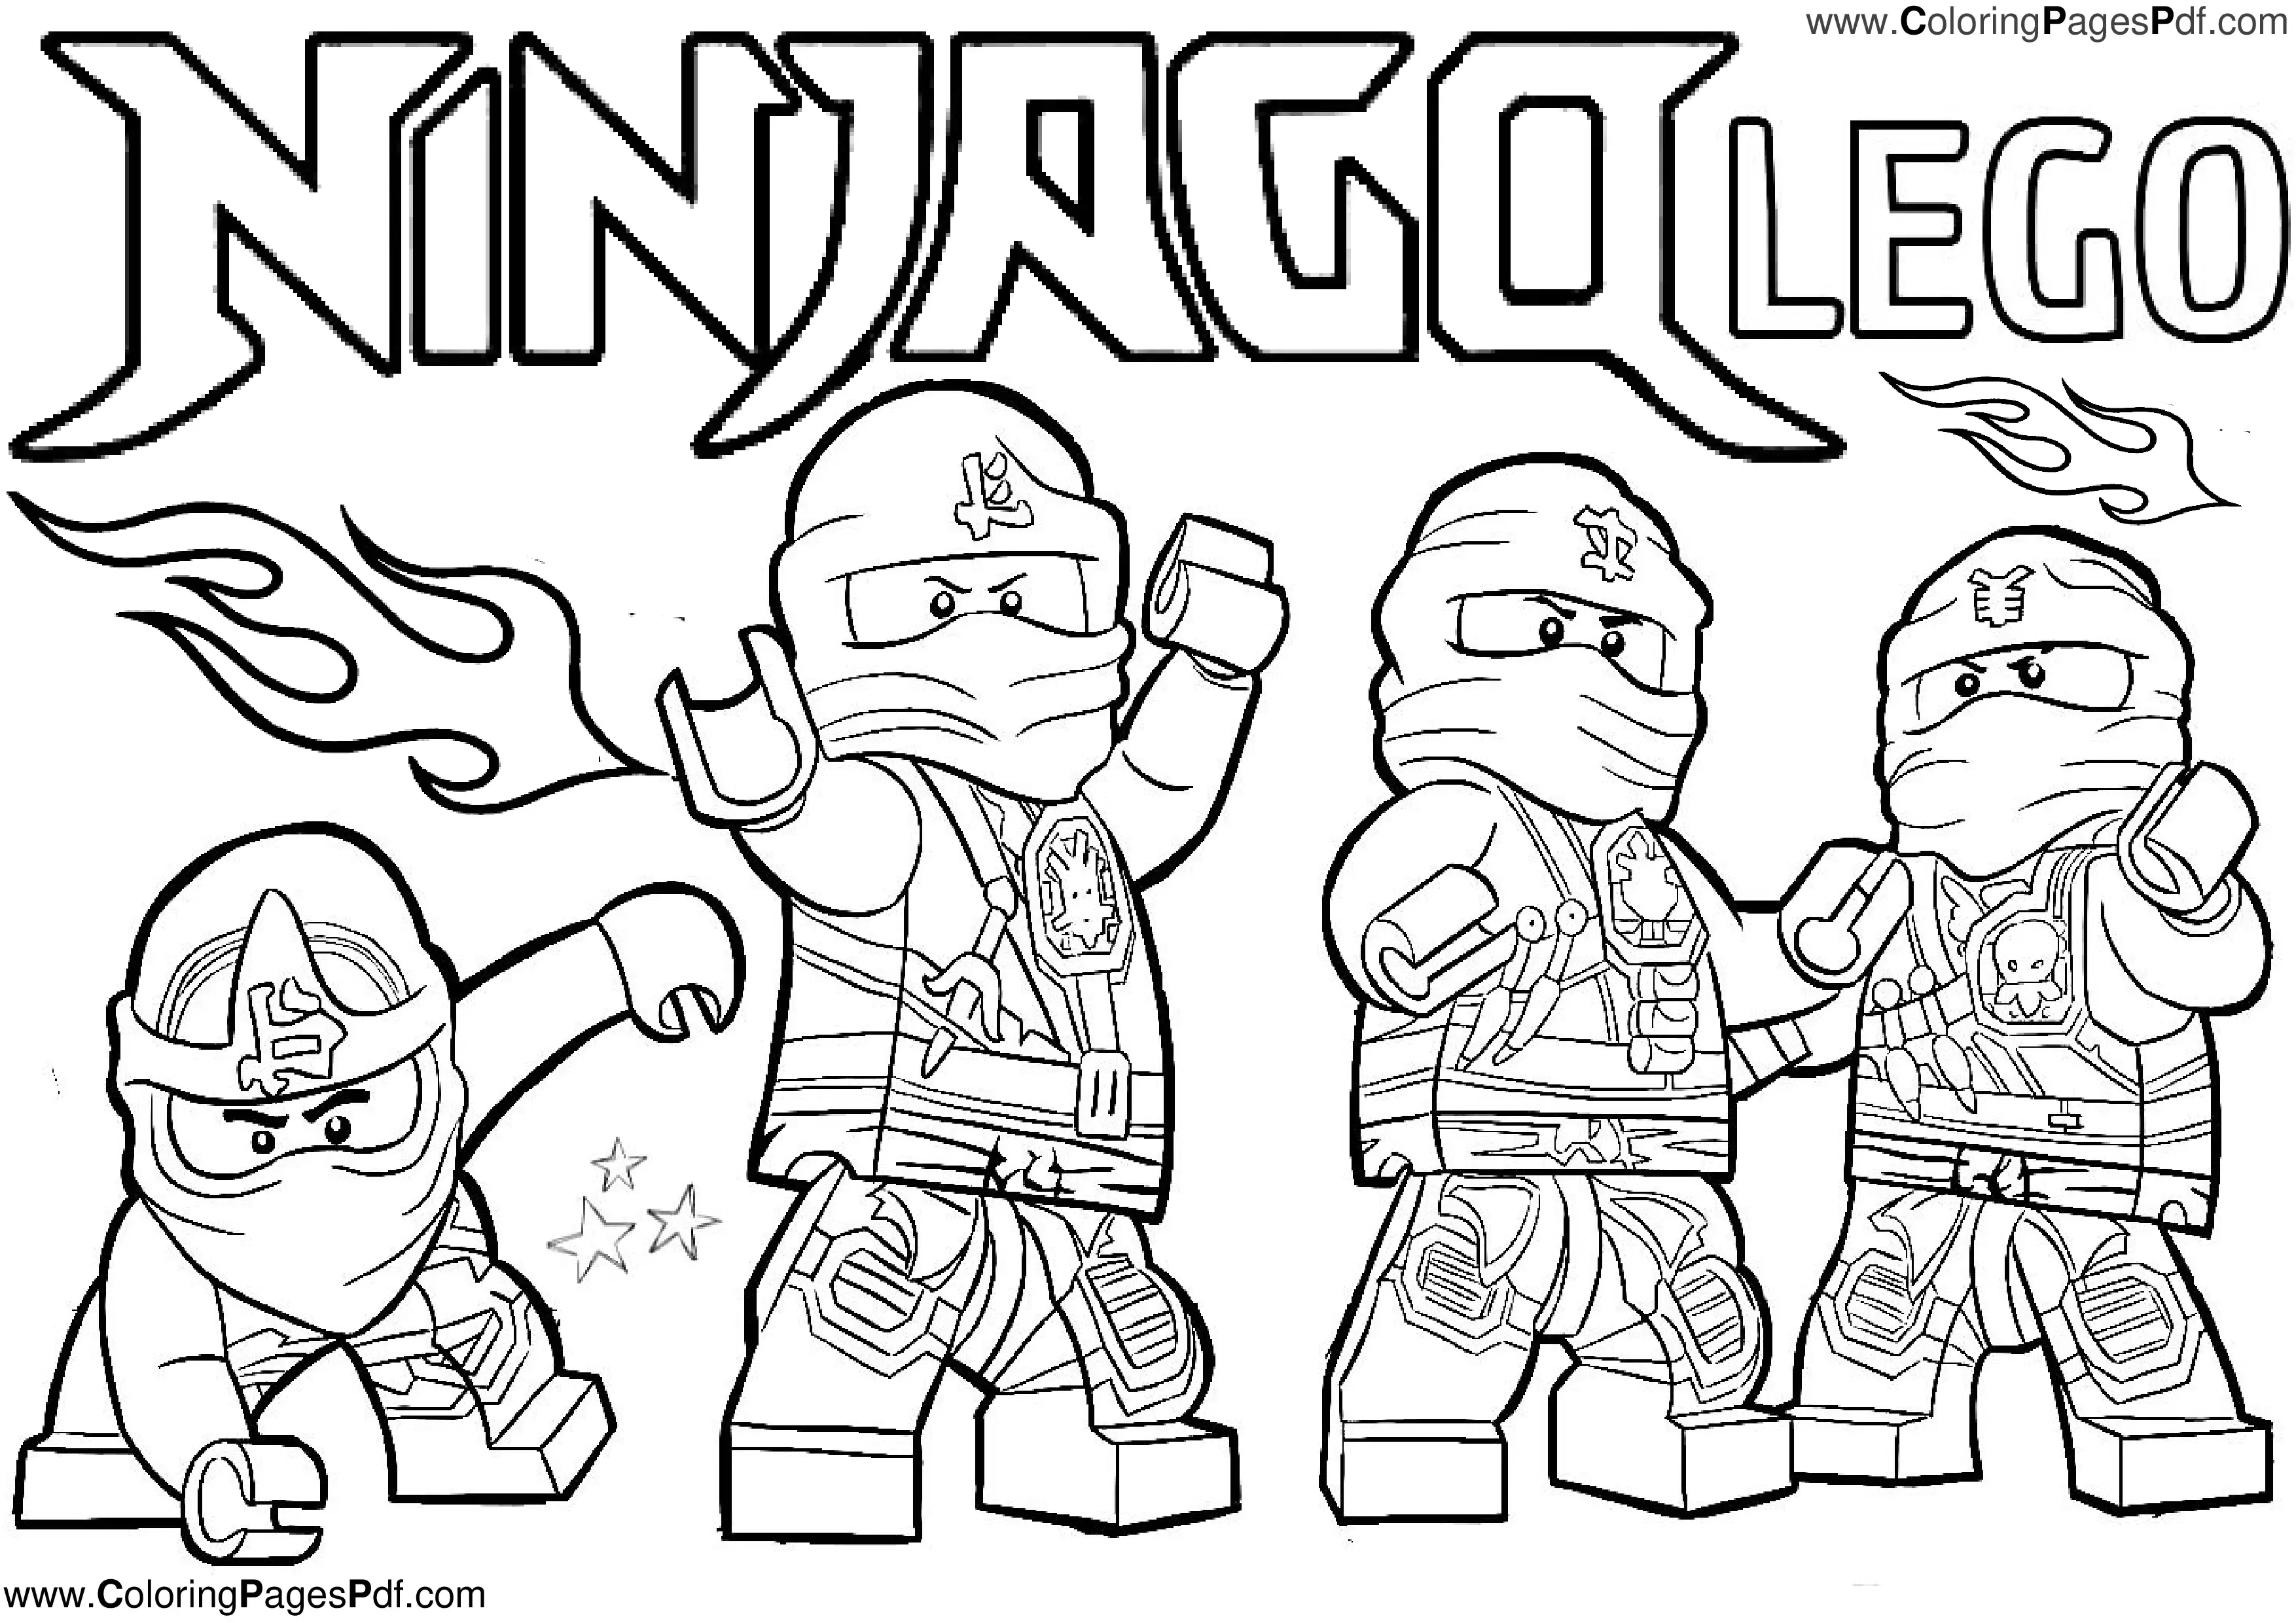 Ninjago coloring pages pdf